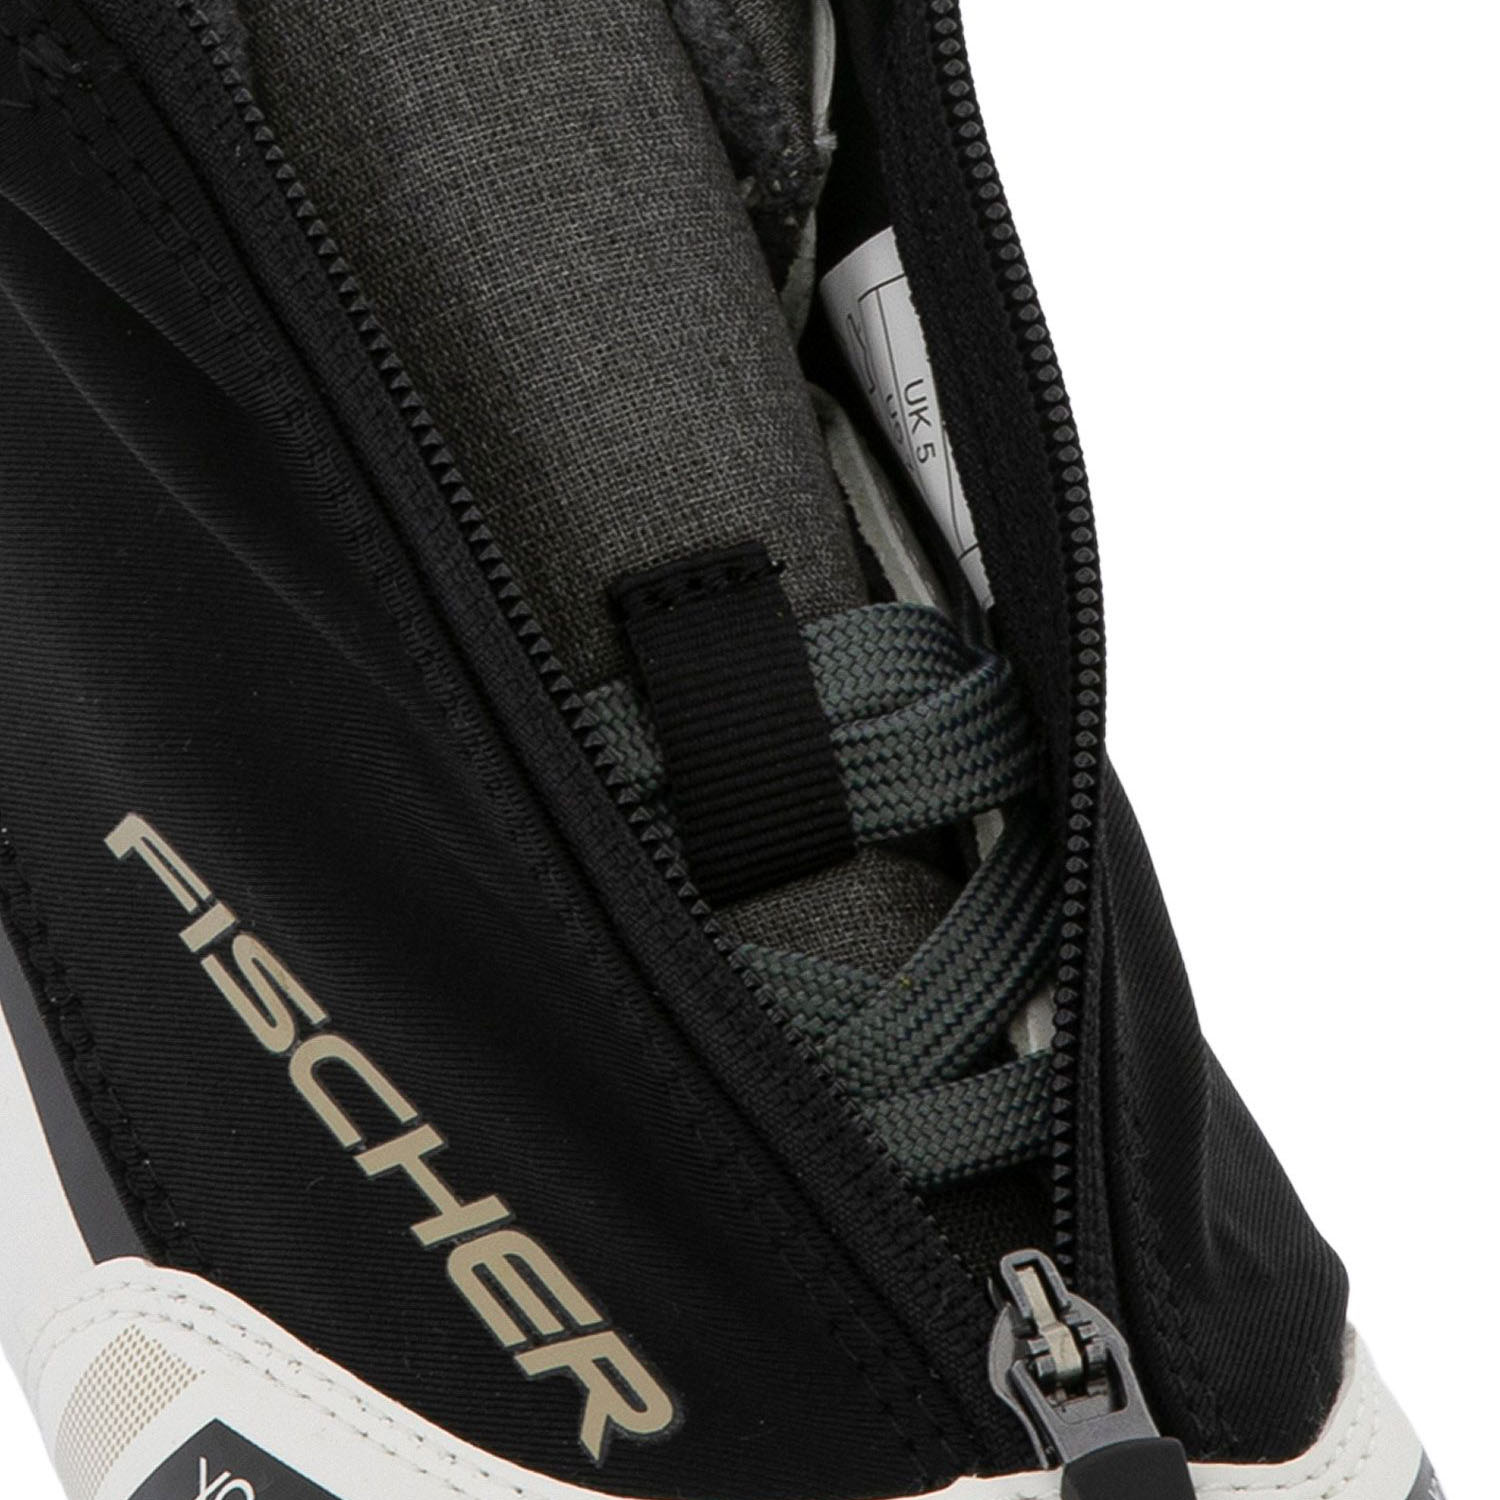 Лыжные ботинки FISCHER XC Pro My Style